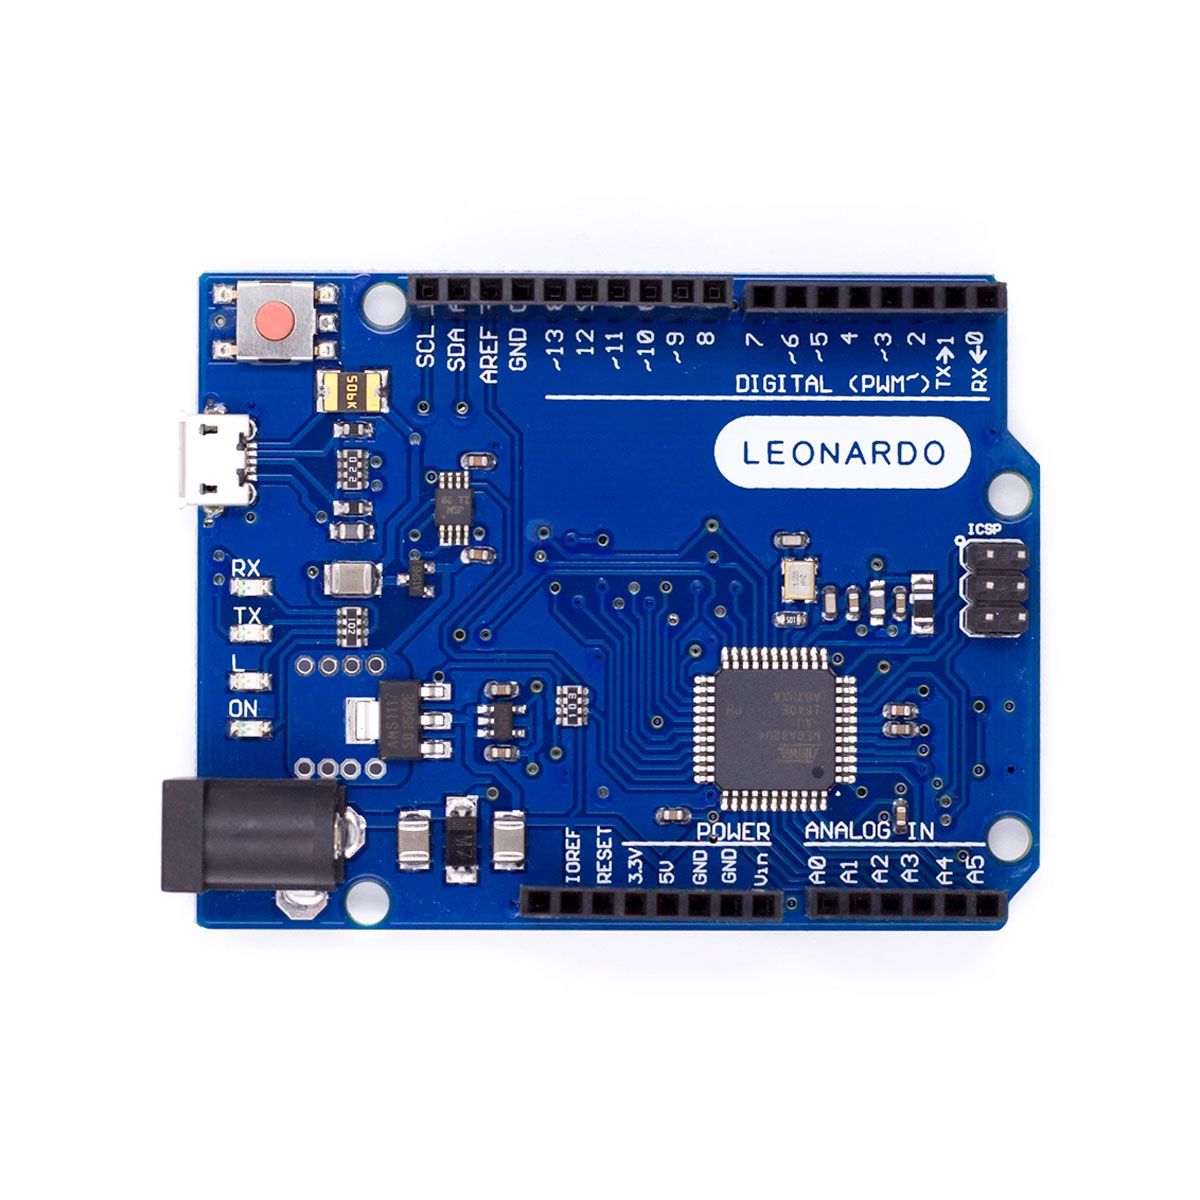 Placa Leonardo + USB Host Shield + Cabo para Arduino Leonardo